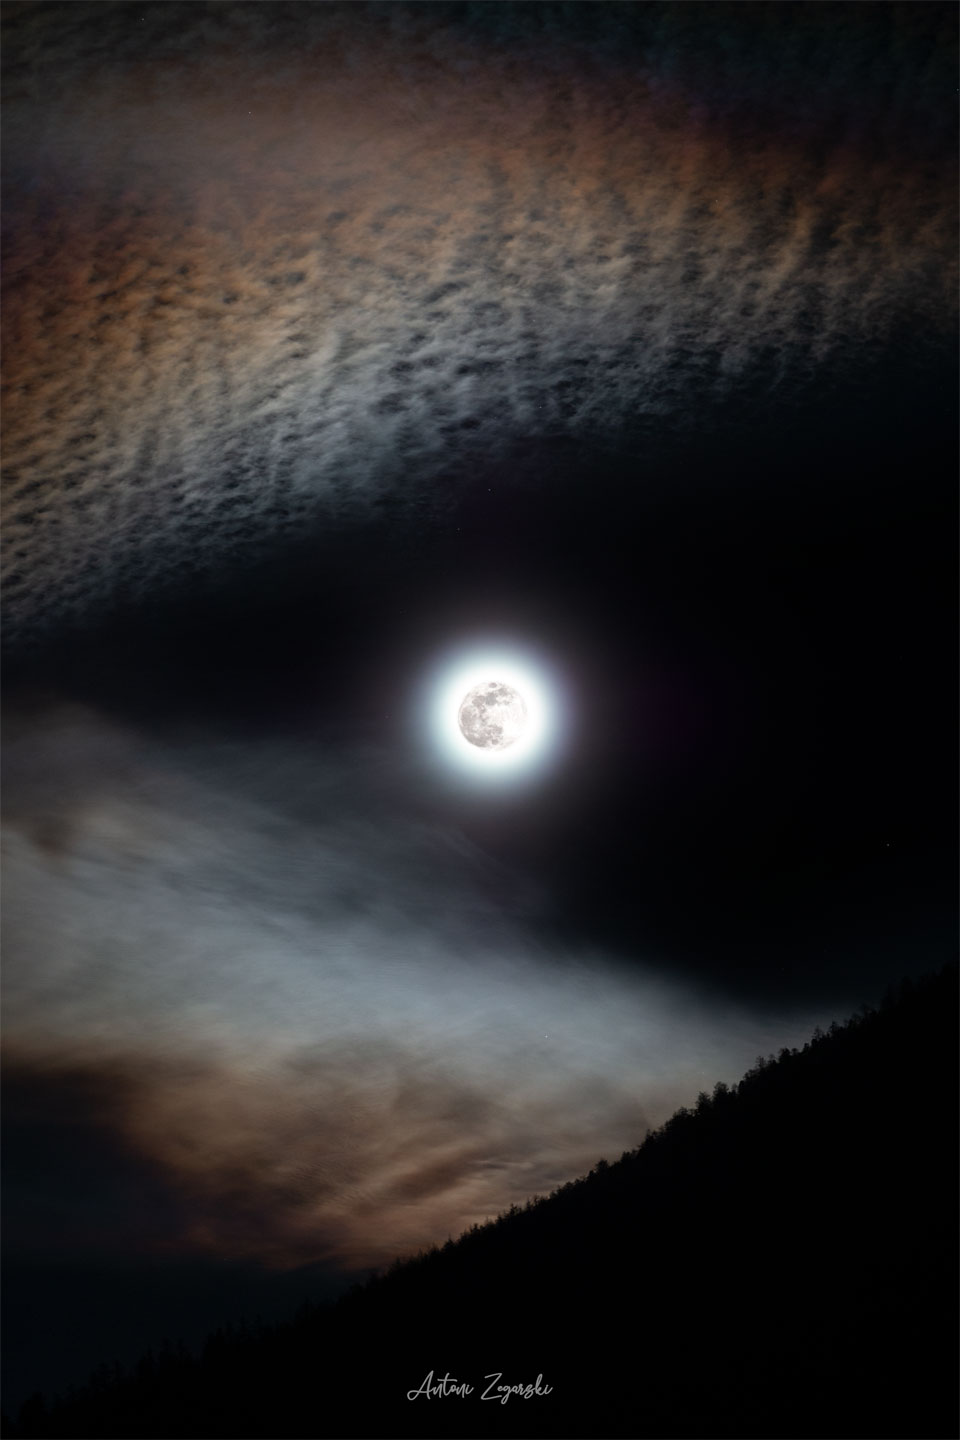 图像中央可以看到一轮明亮的满月。边缘处可见有角的云，使月亮看起来像是在狼的嘴里或狼的眼睛里。有关更多详细信息，请参阅说明。